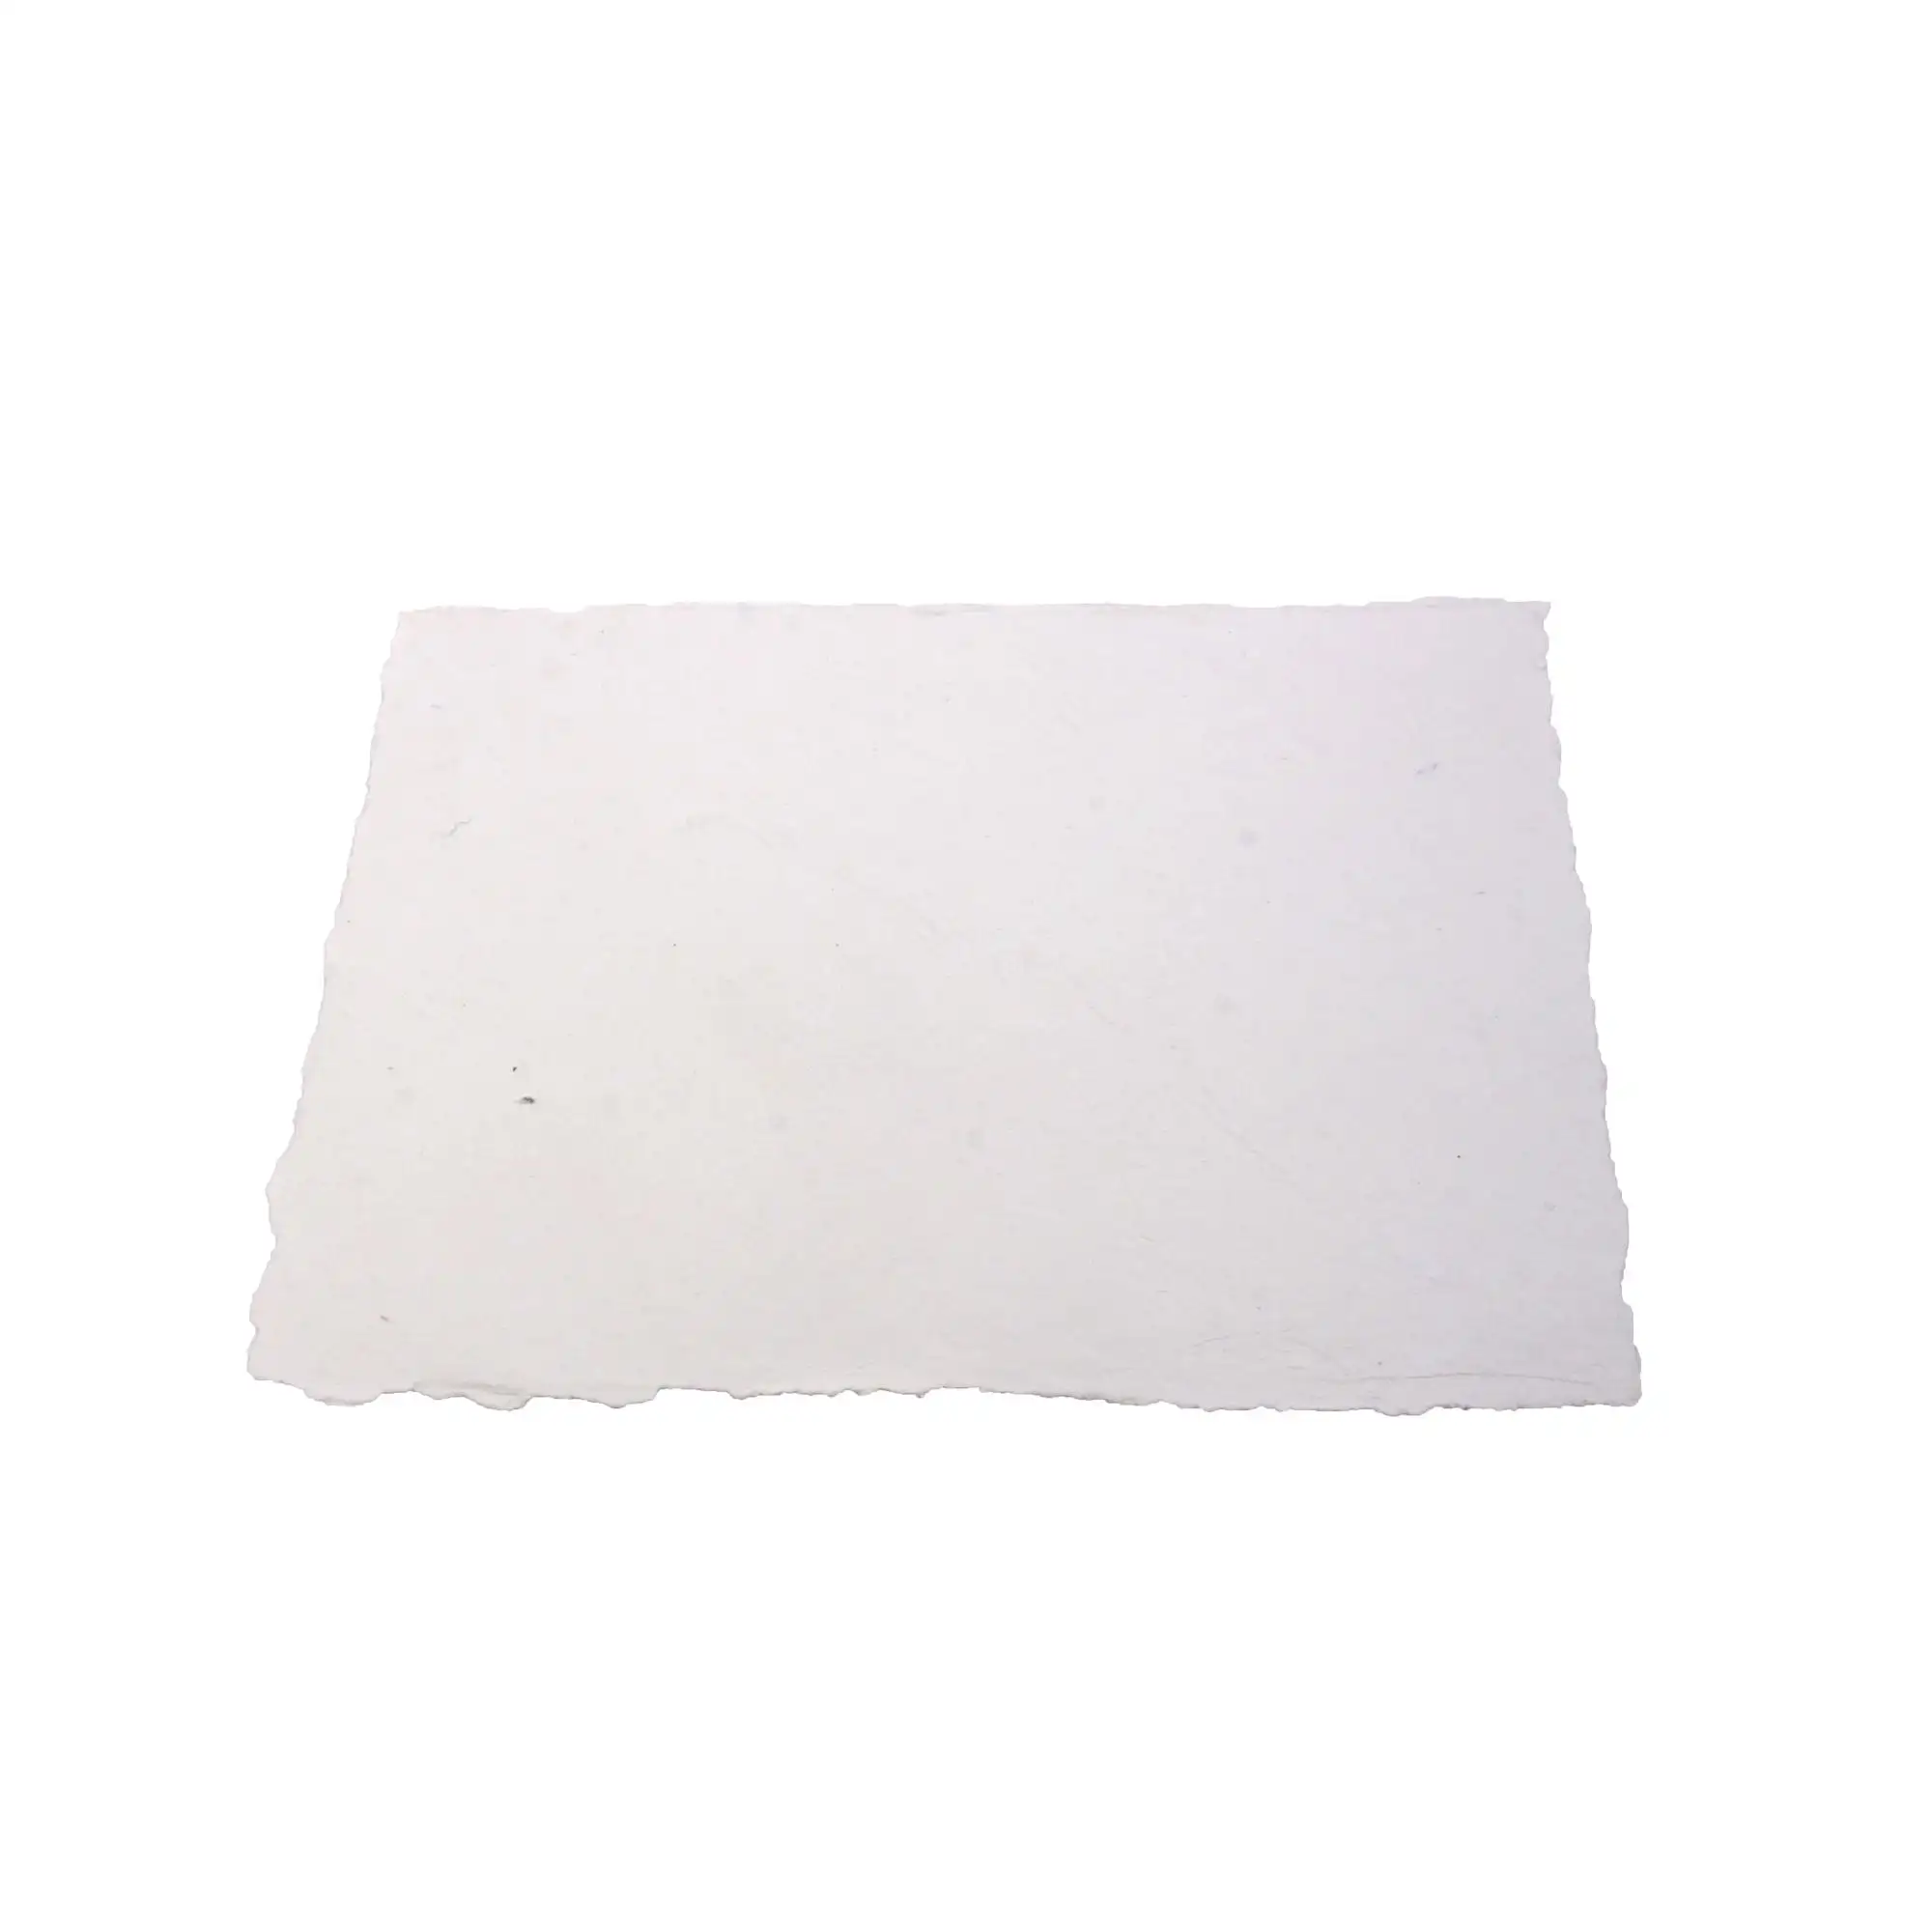 Papel decorativo hecho a mano con borde para decoración de invitaciones, papel blanco de algodón reciclado con borde quemado